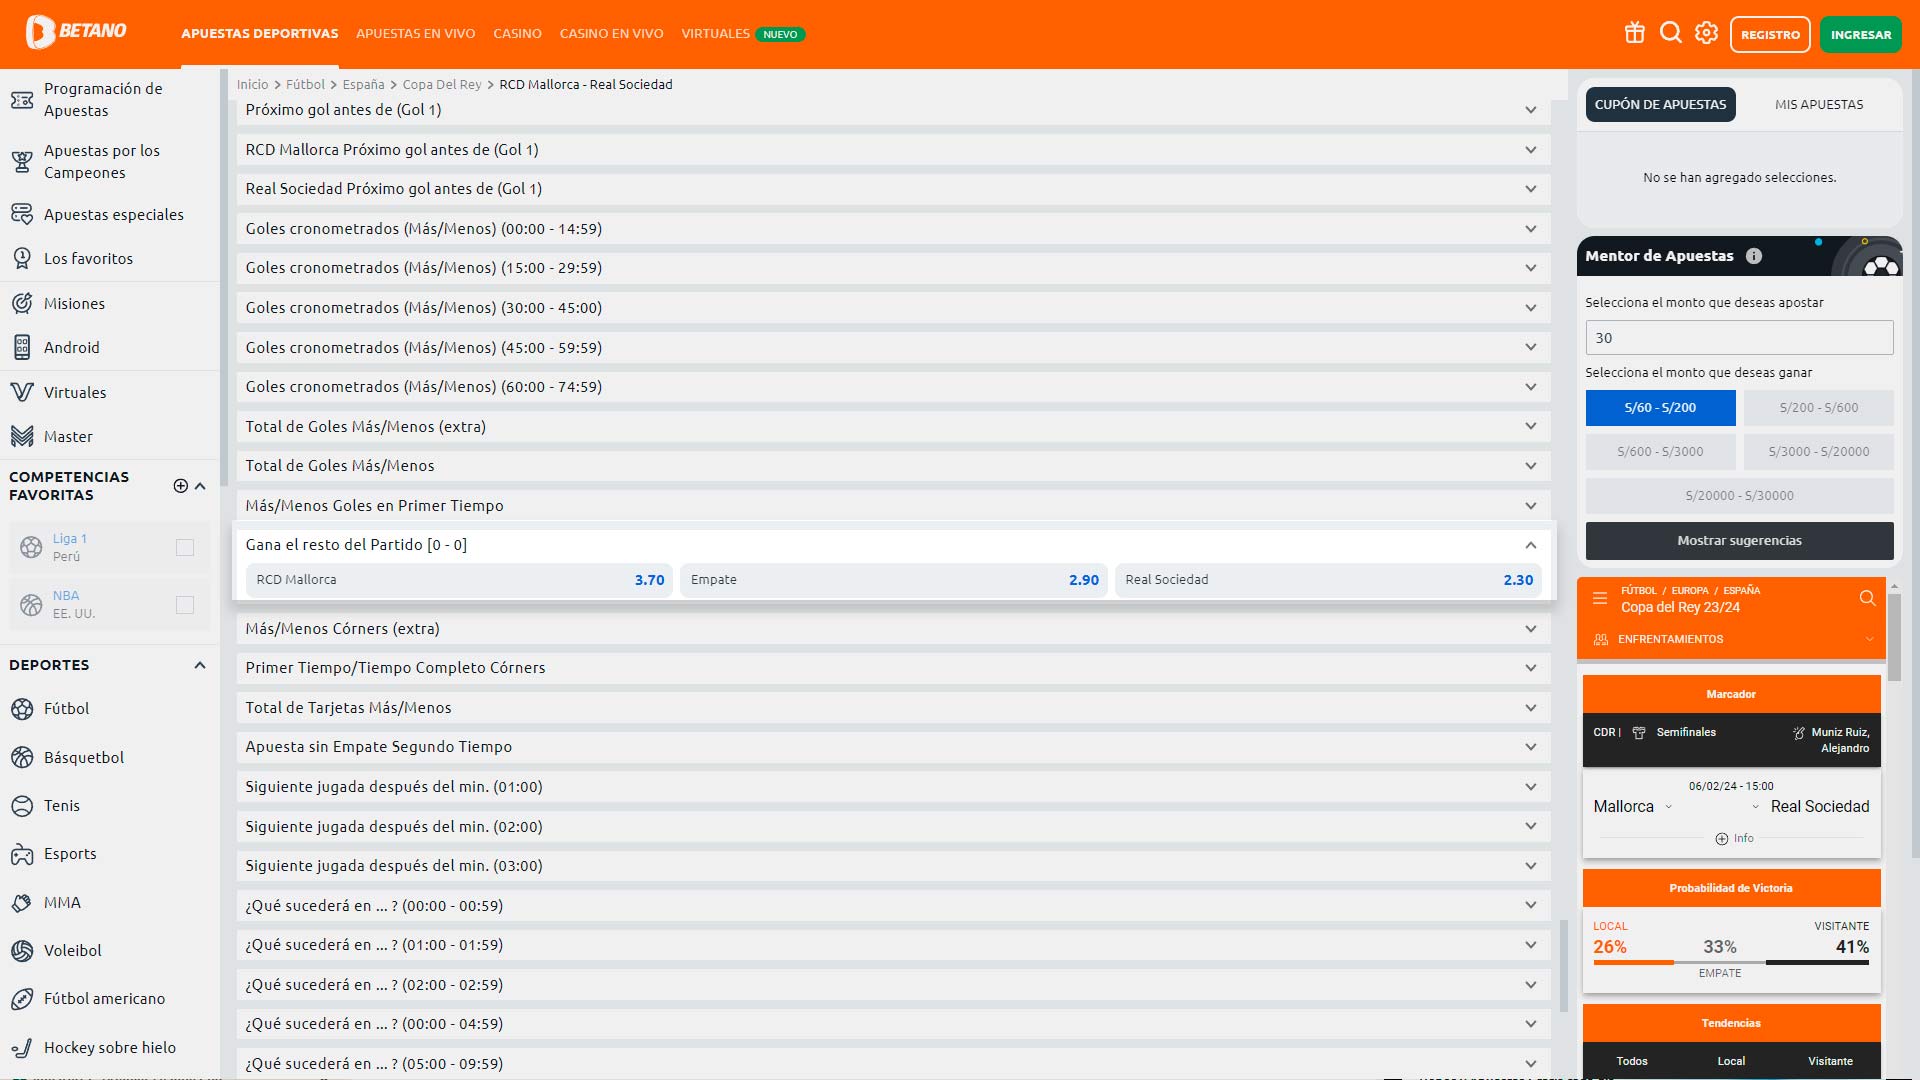 captura de pantalla de la página de apuestas de gana el resto del partido de Betano